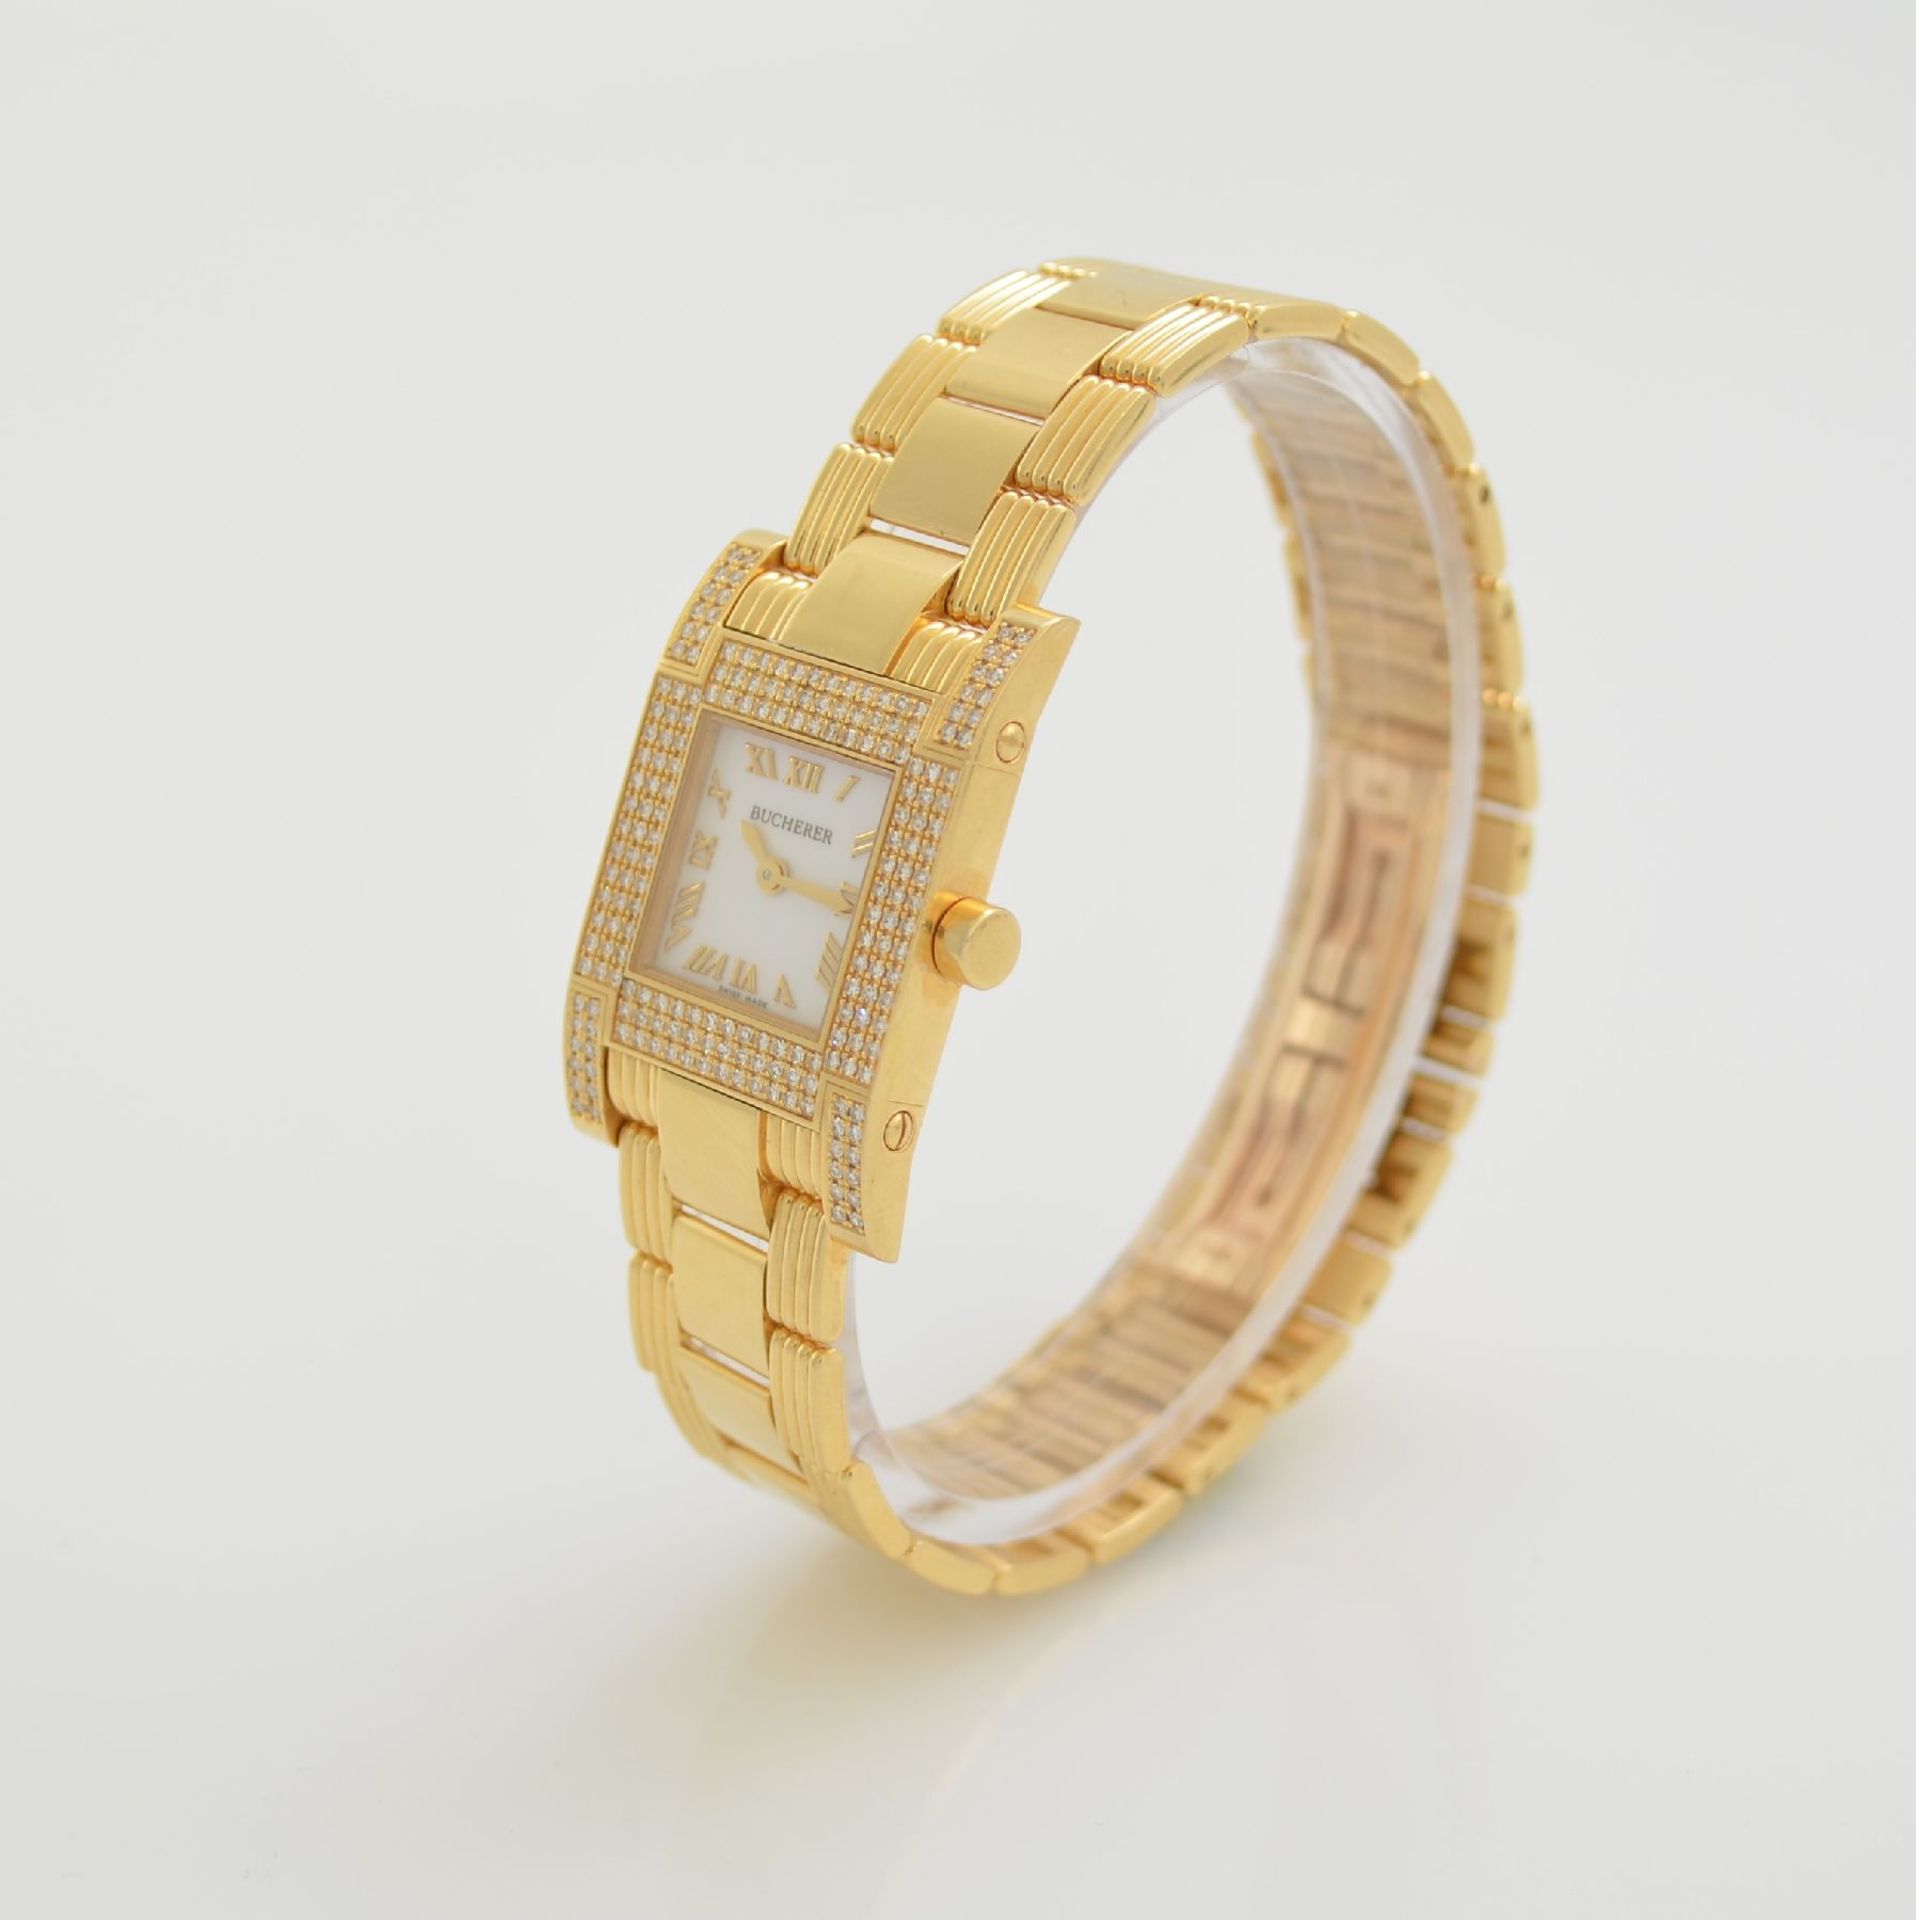 BUCHERER 18k yellow gold diamond set ladies wristwatch, Switzerland around 2000, quartz, bracelet - Bild 3 aus 7